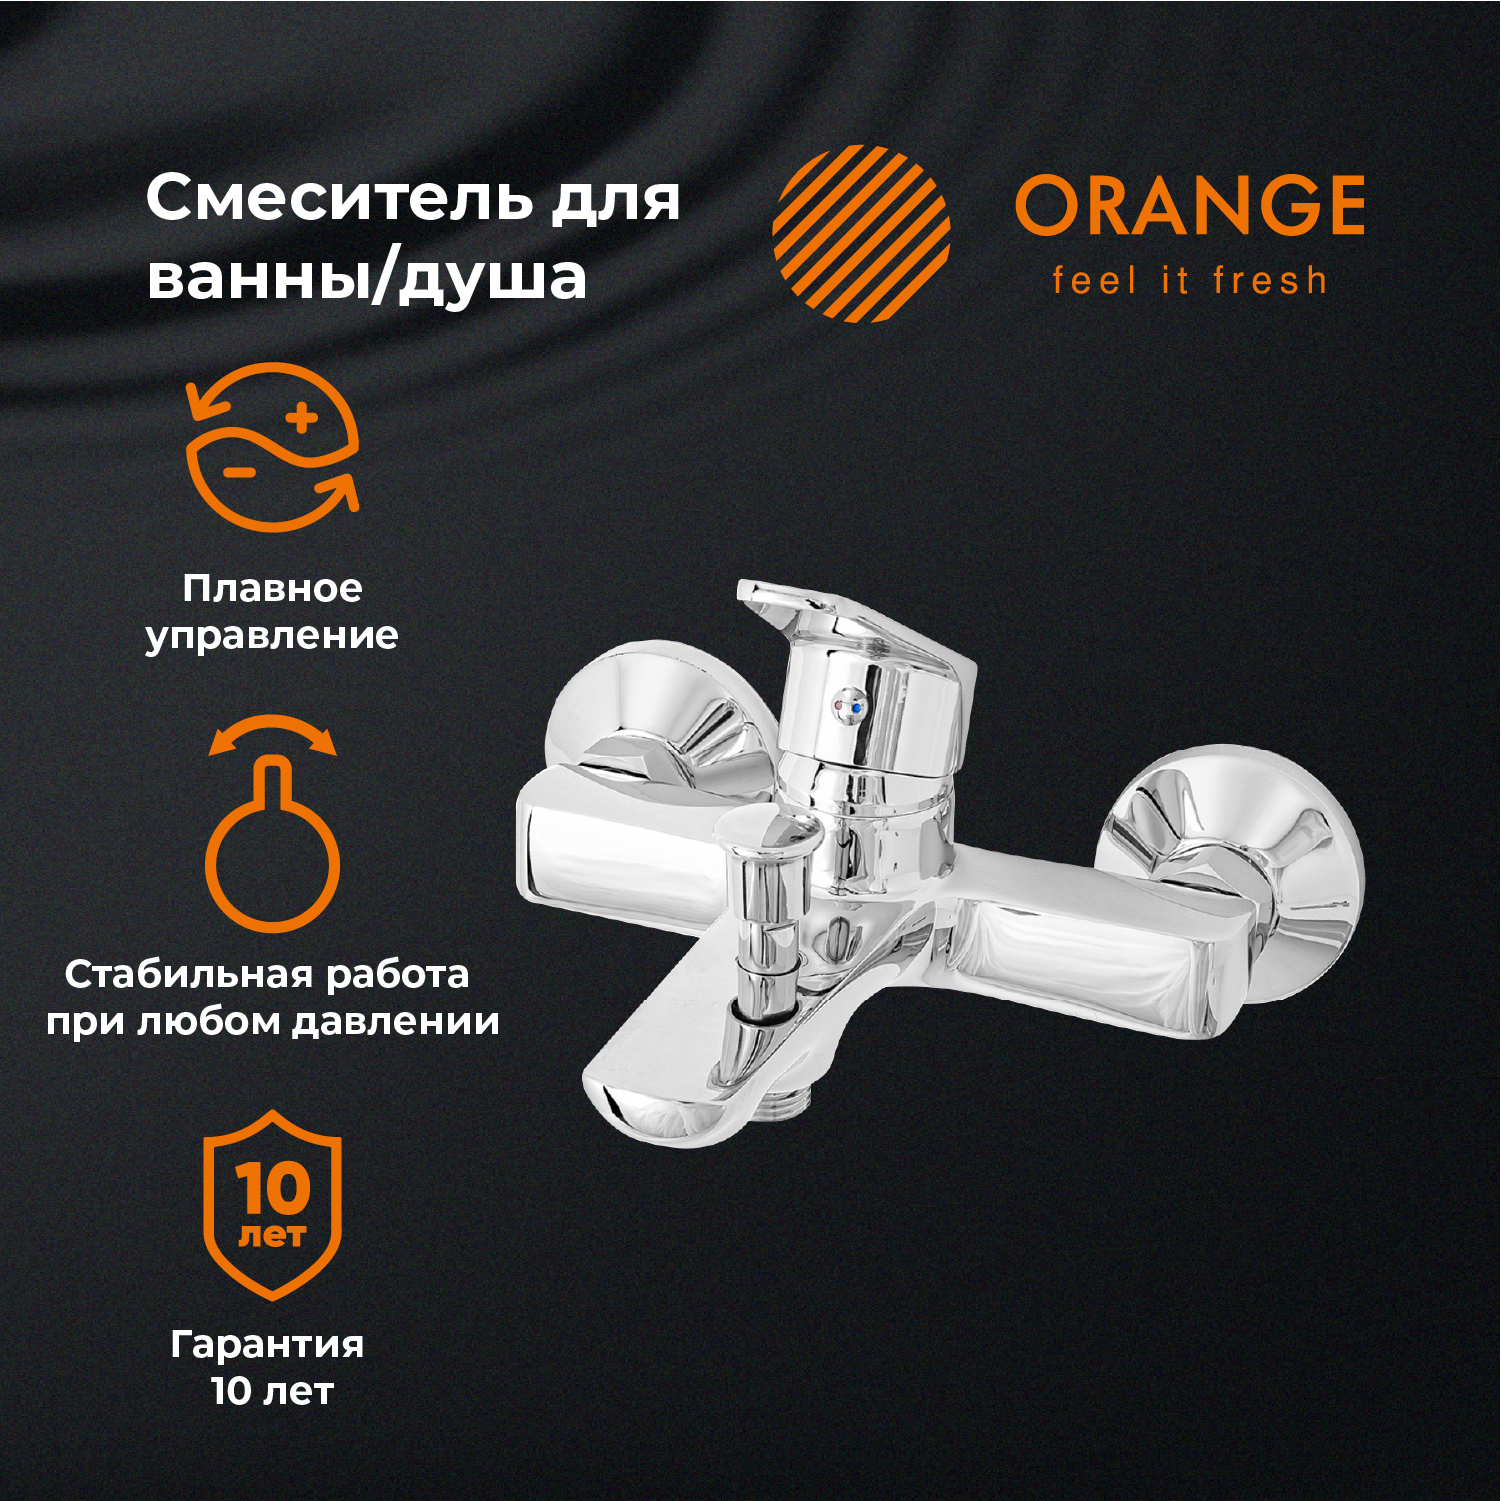 Смеситель для ванны и душа Orange FELIX M14-100cr цвет хром разъемный фиксатор резьбы felix